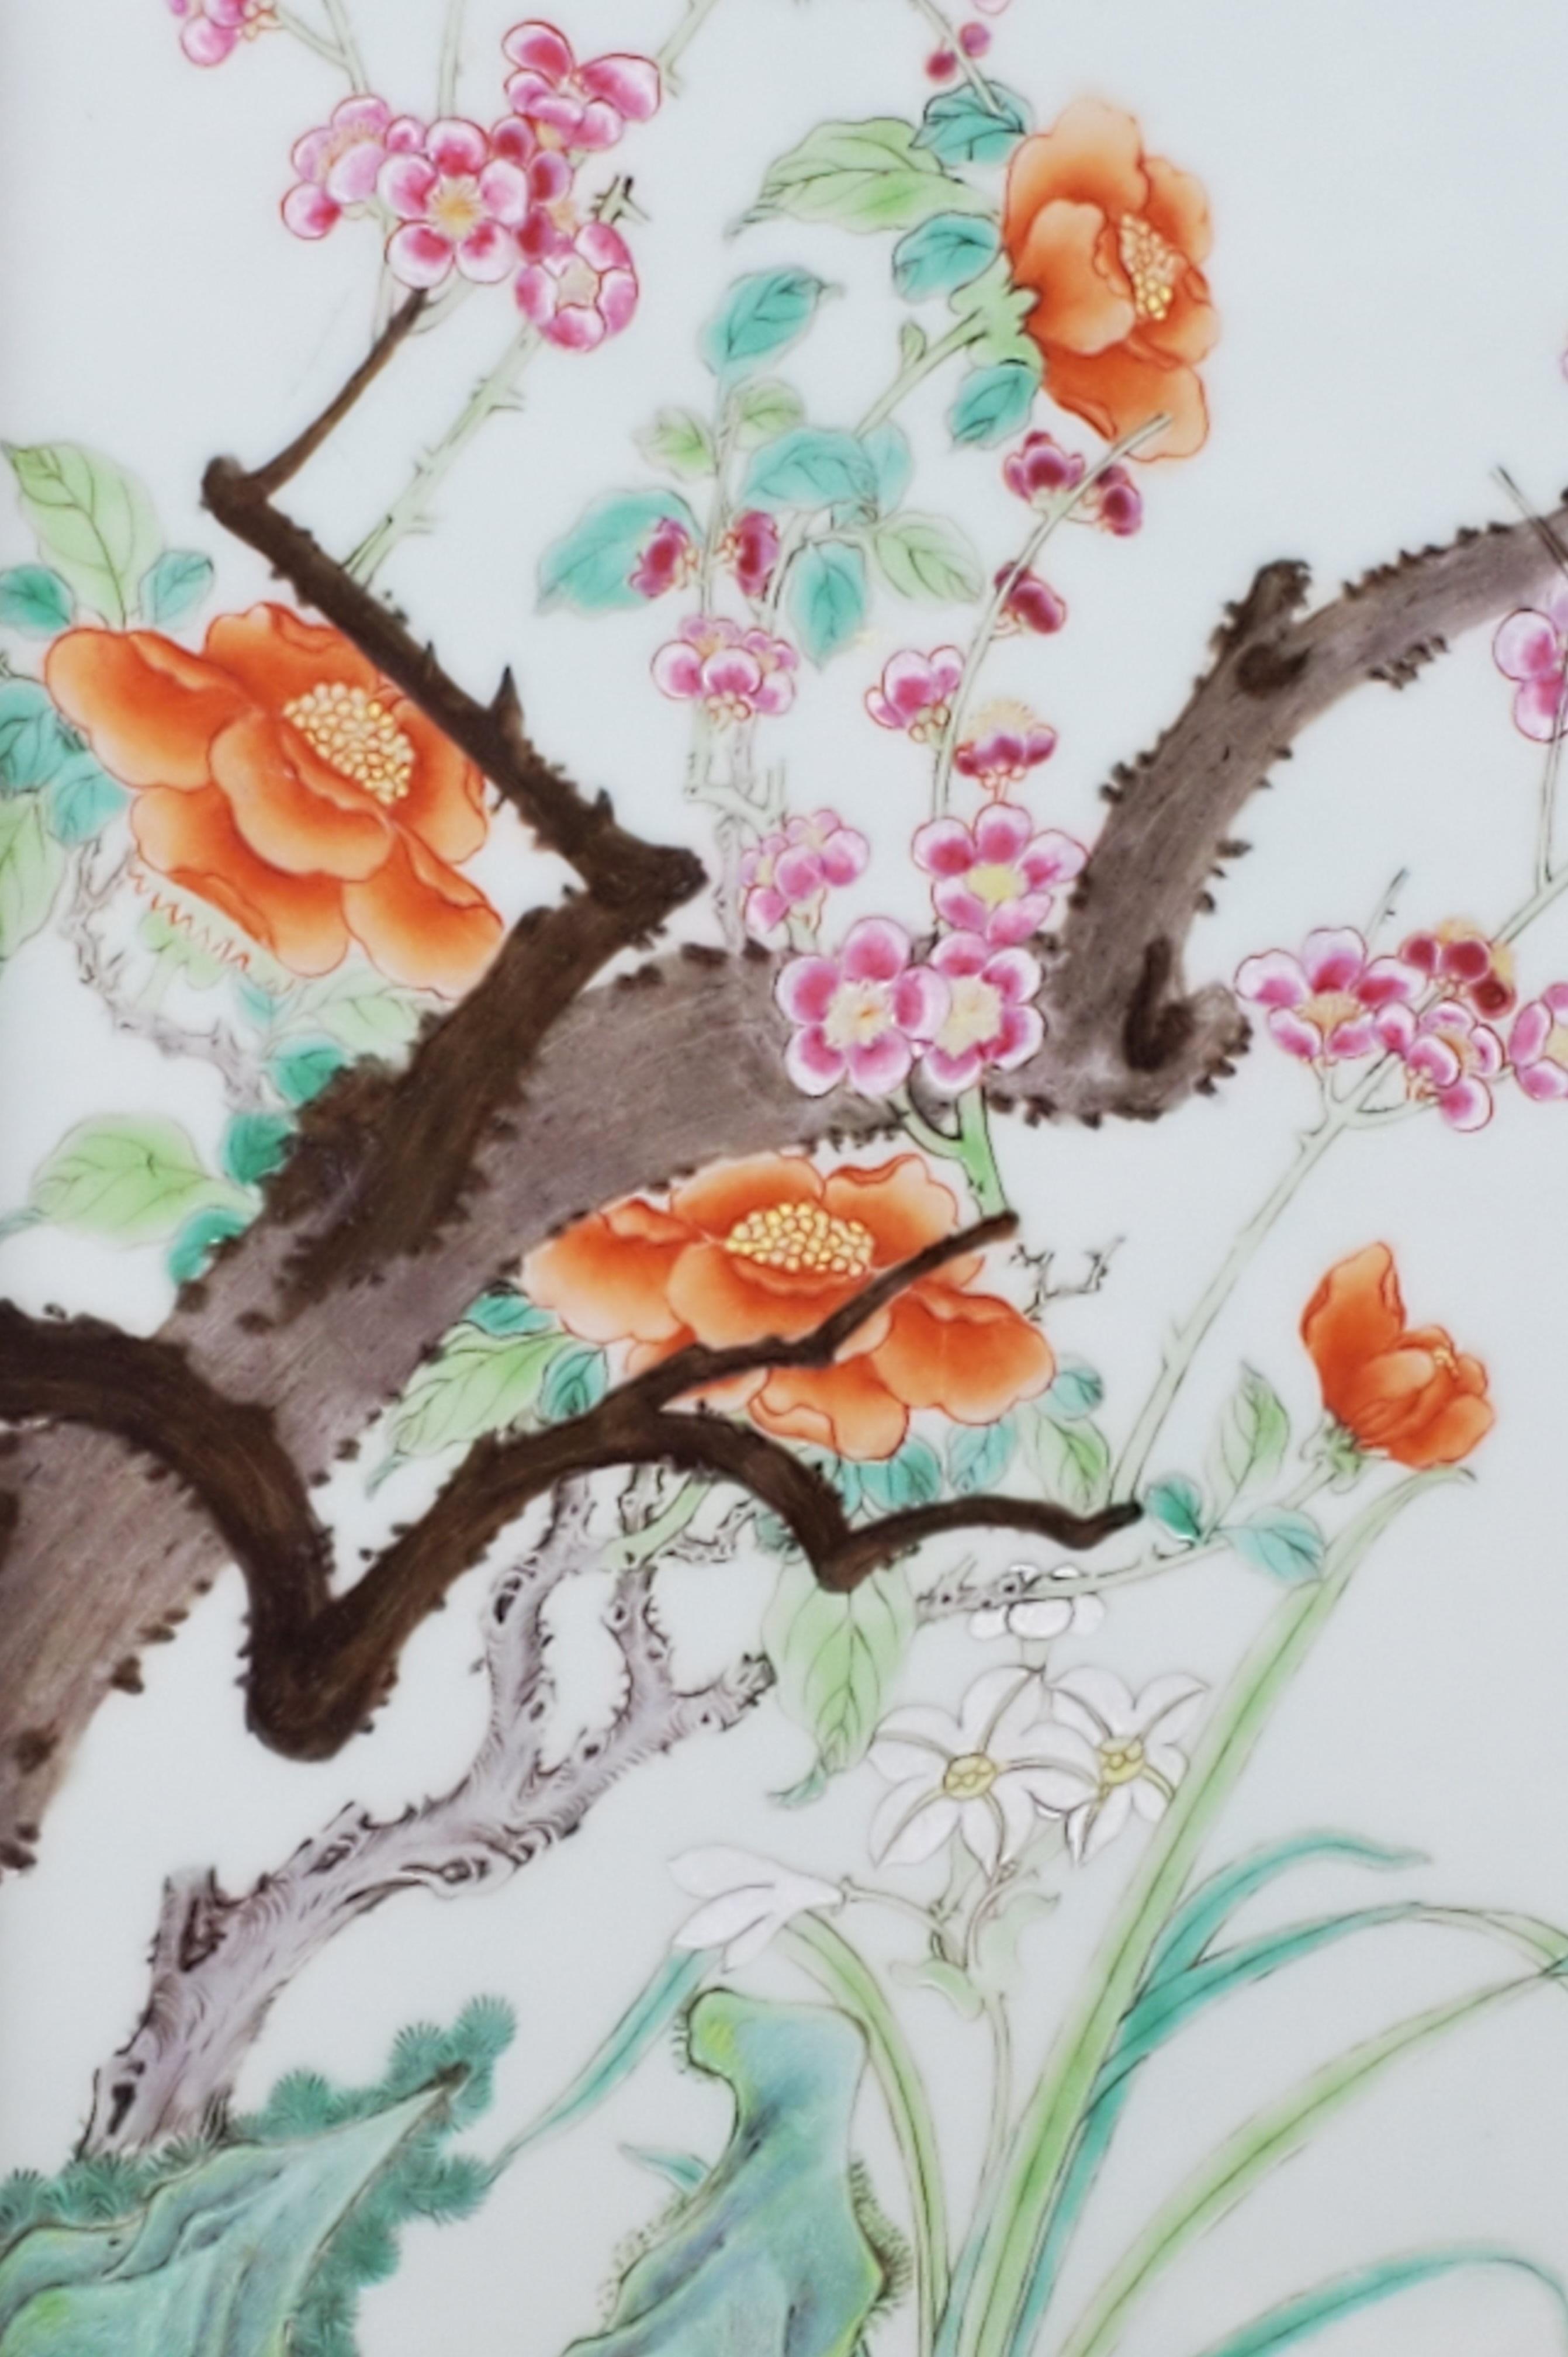 Dieses schöne und seltene handgemalte Porzellanbild mit Blumenmotiv besteht aus Baumpfingstrosen, Obstblüten und Lilien, die in der chinesischen Kultur allesamt als glücksverheißende Blumen gelten. Die vorherrschenden Farben sind Orange, Rosa,